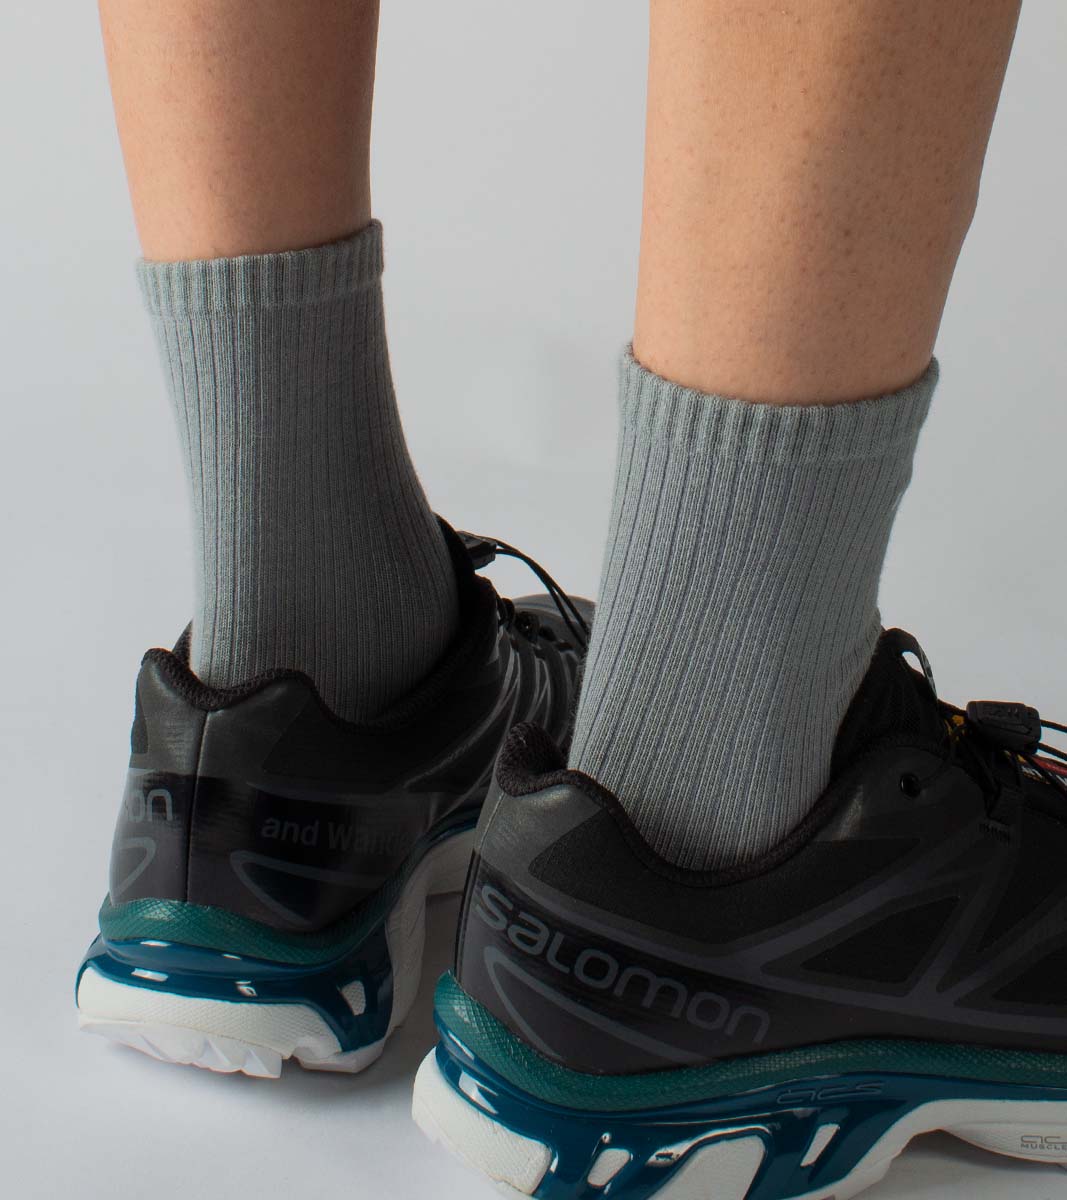 Essential casual socks -Lucid Grey